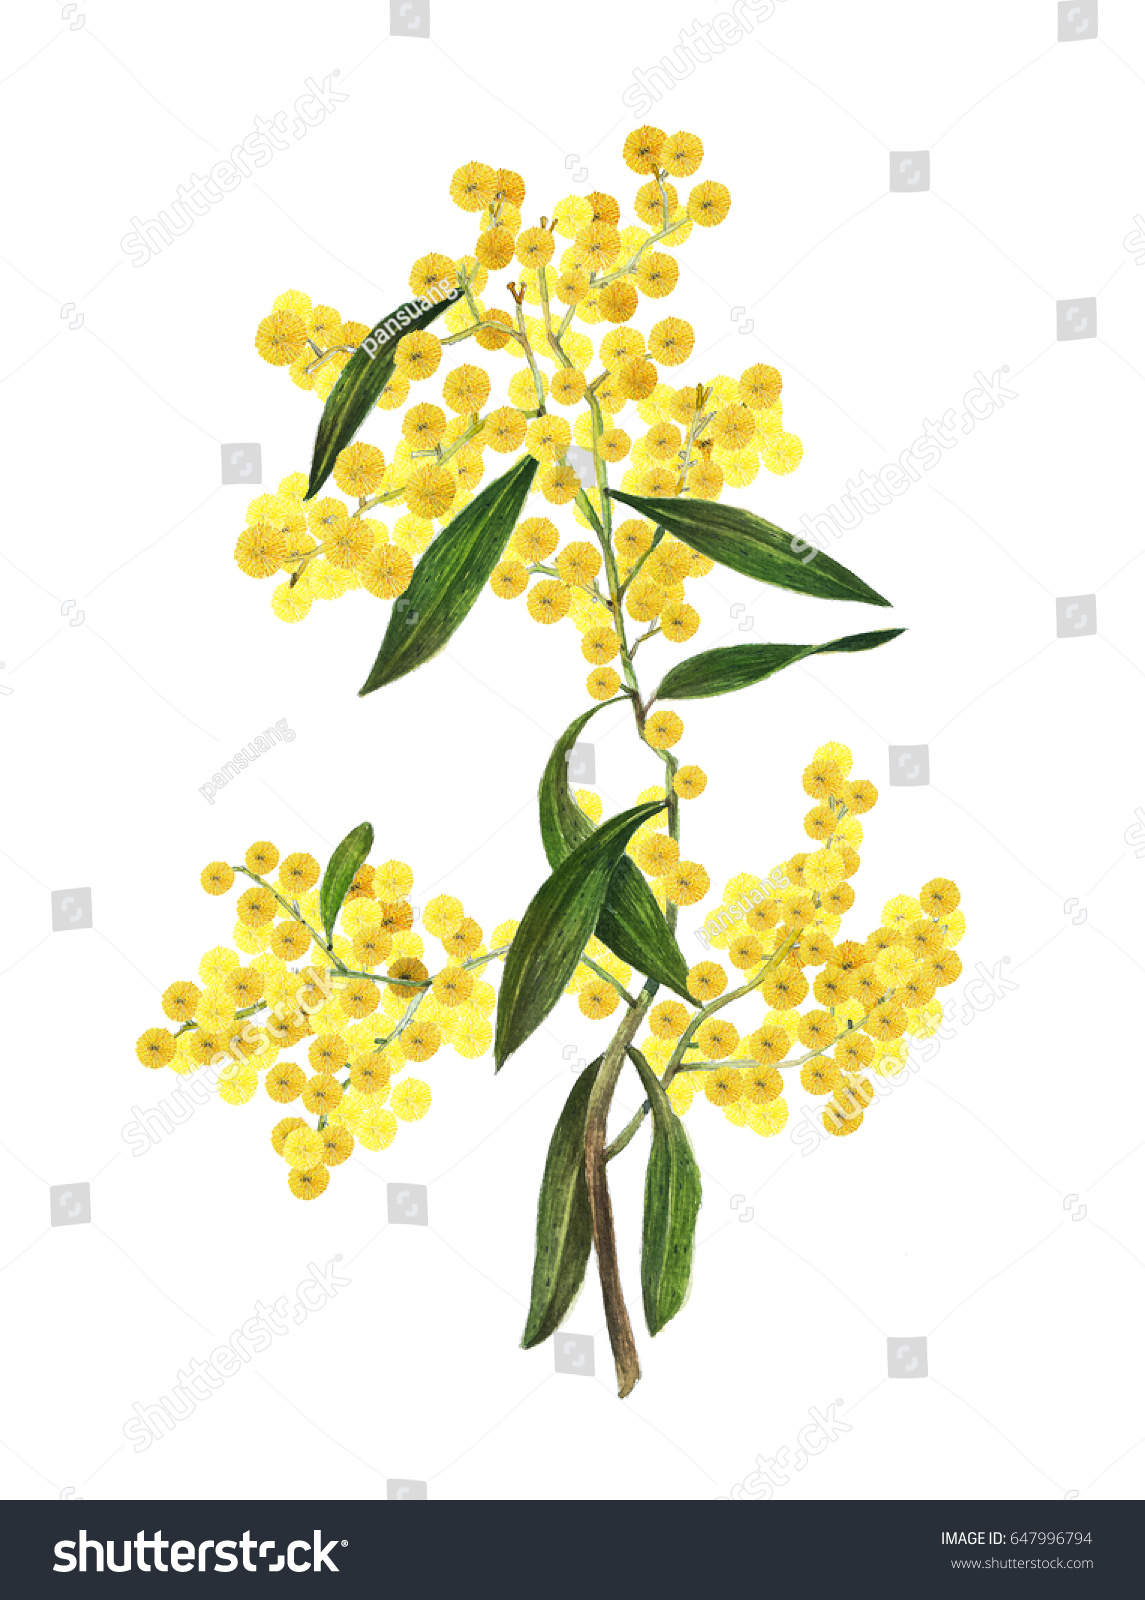 ゴールデン ワトル アカシア ピクナンタ はオーストラリアの国花である のイラスト素材